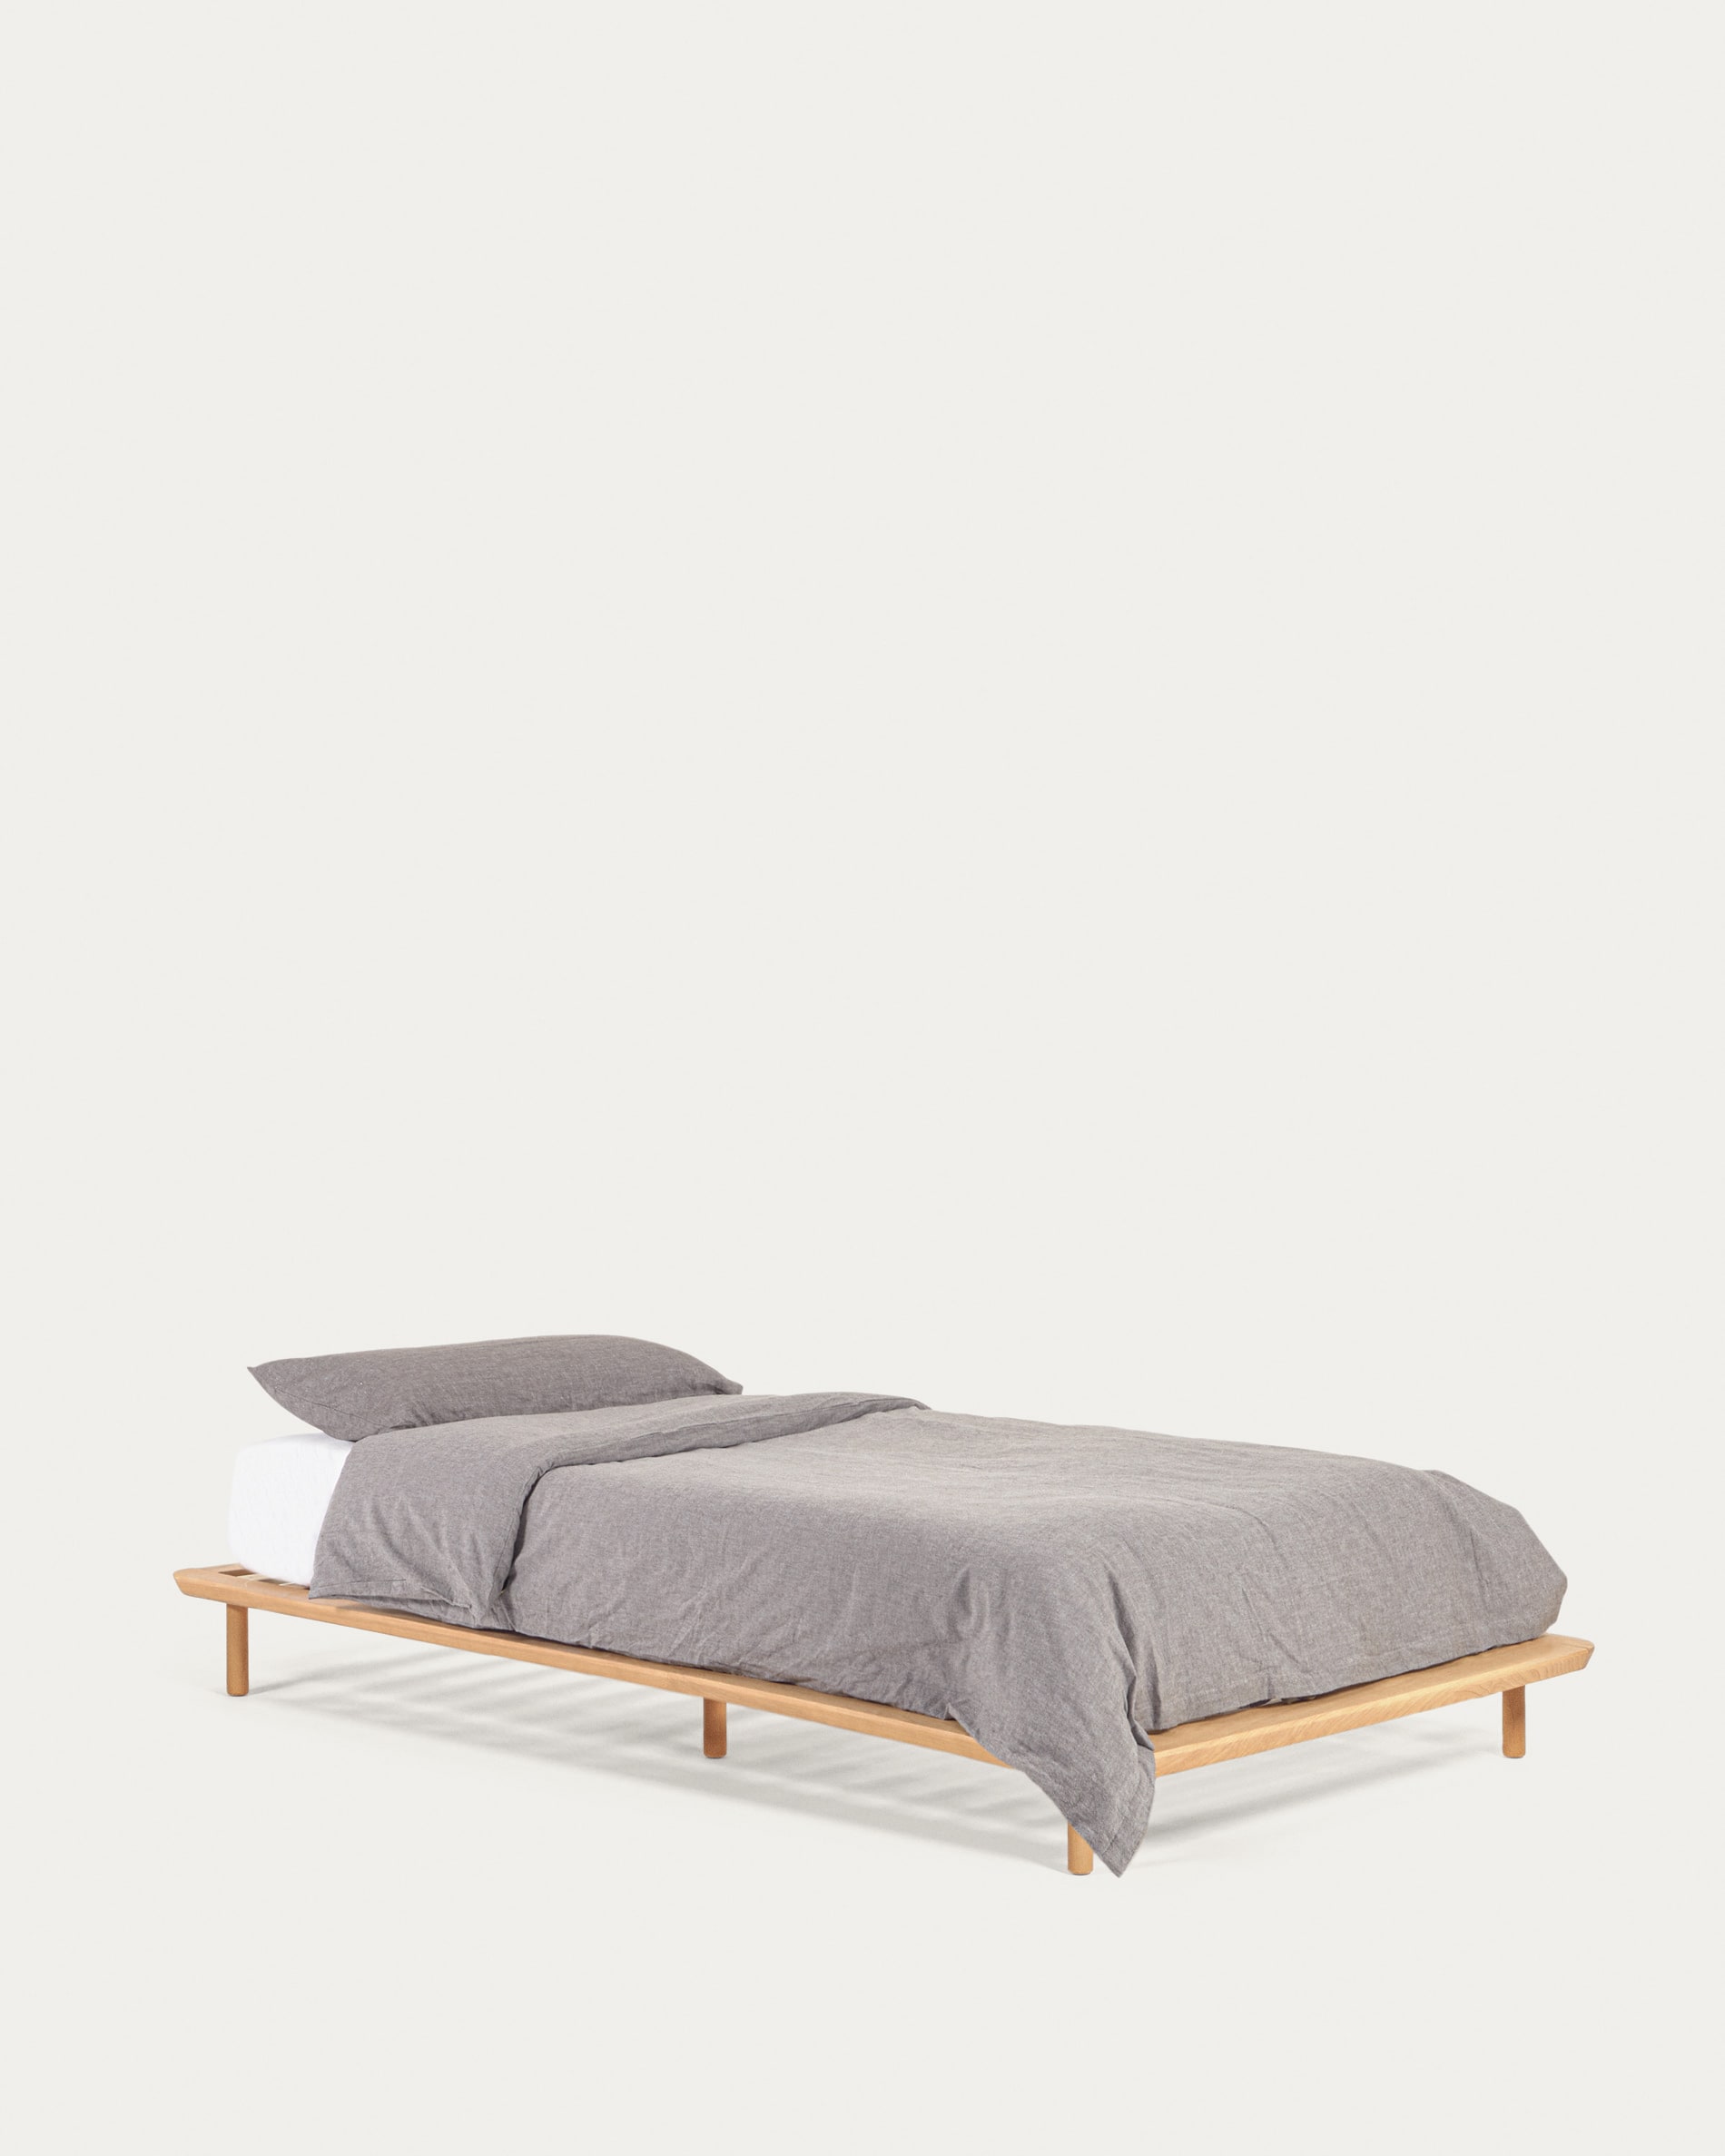 Anielle bed massief essenhout voor matras van 90 x 200 cm | Kave Home